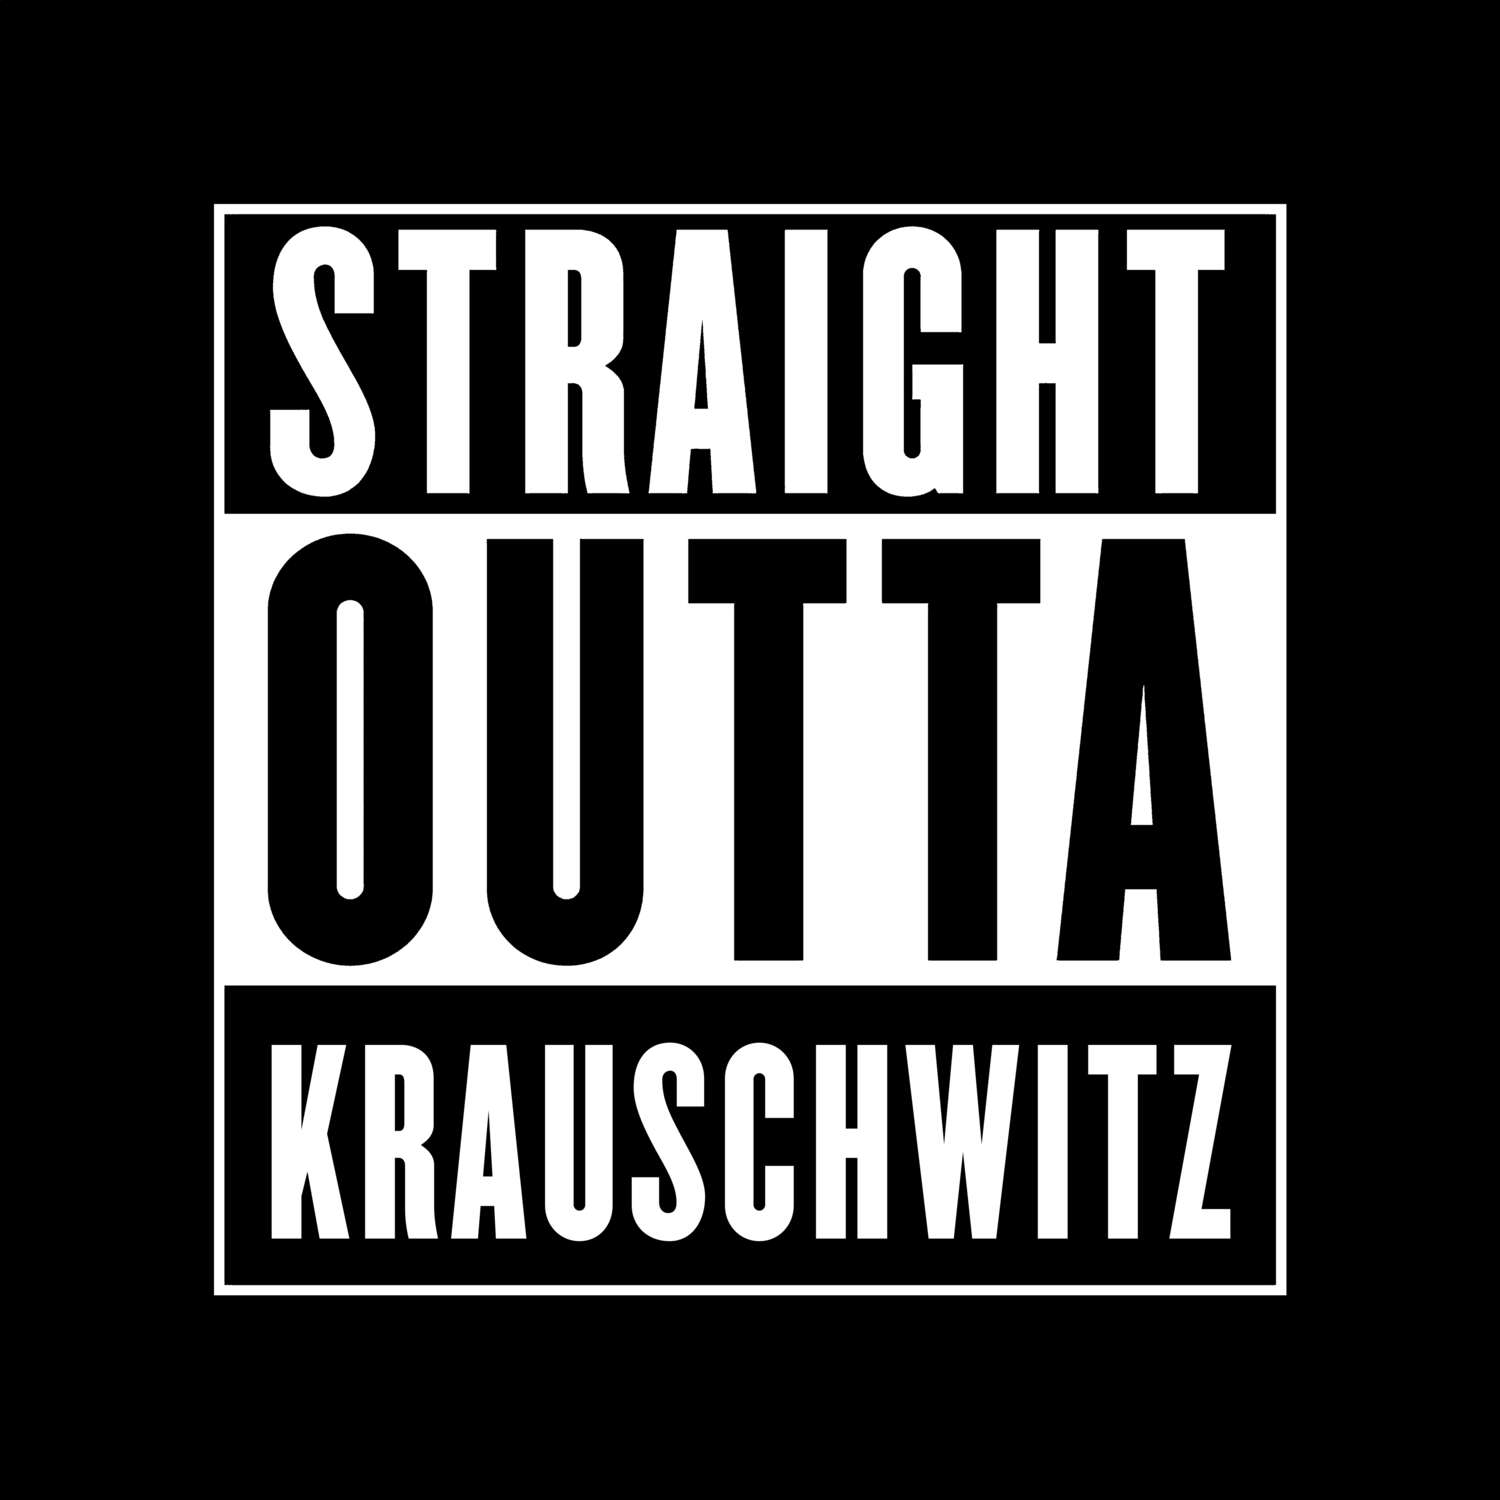 Krauschwitz T-Shirt »Straight Outta«